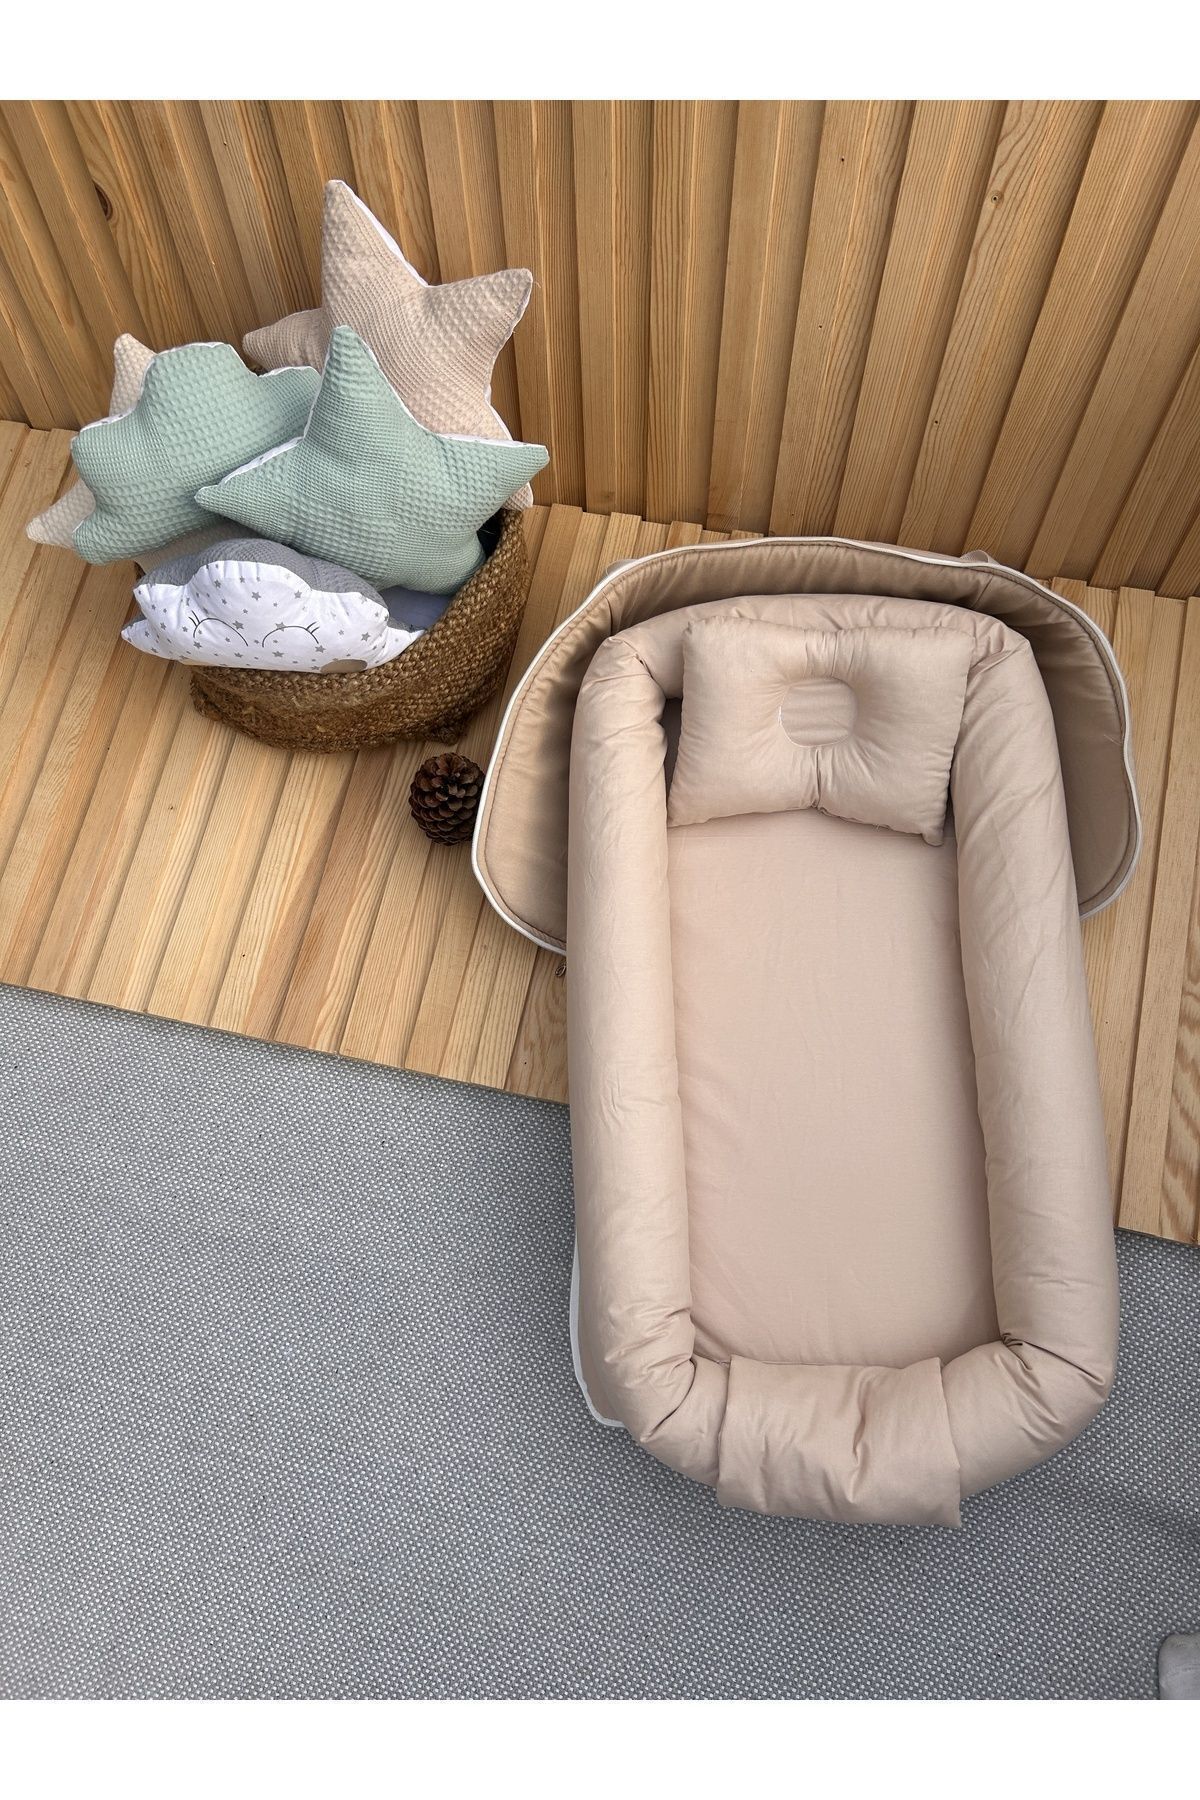 Genel Markalar Babynestim Bebeğiniz Için Her Yerde Rahatlık Taşınabilir Çantalı Babynest - Bej